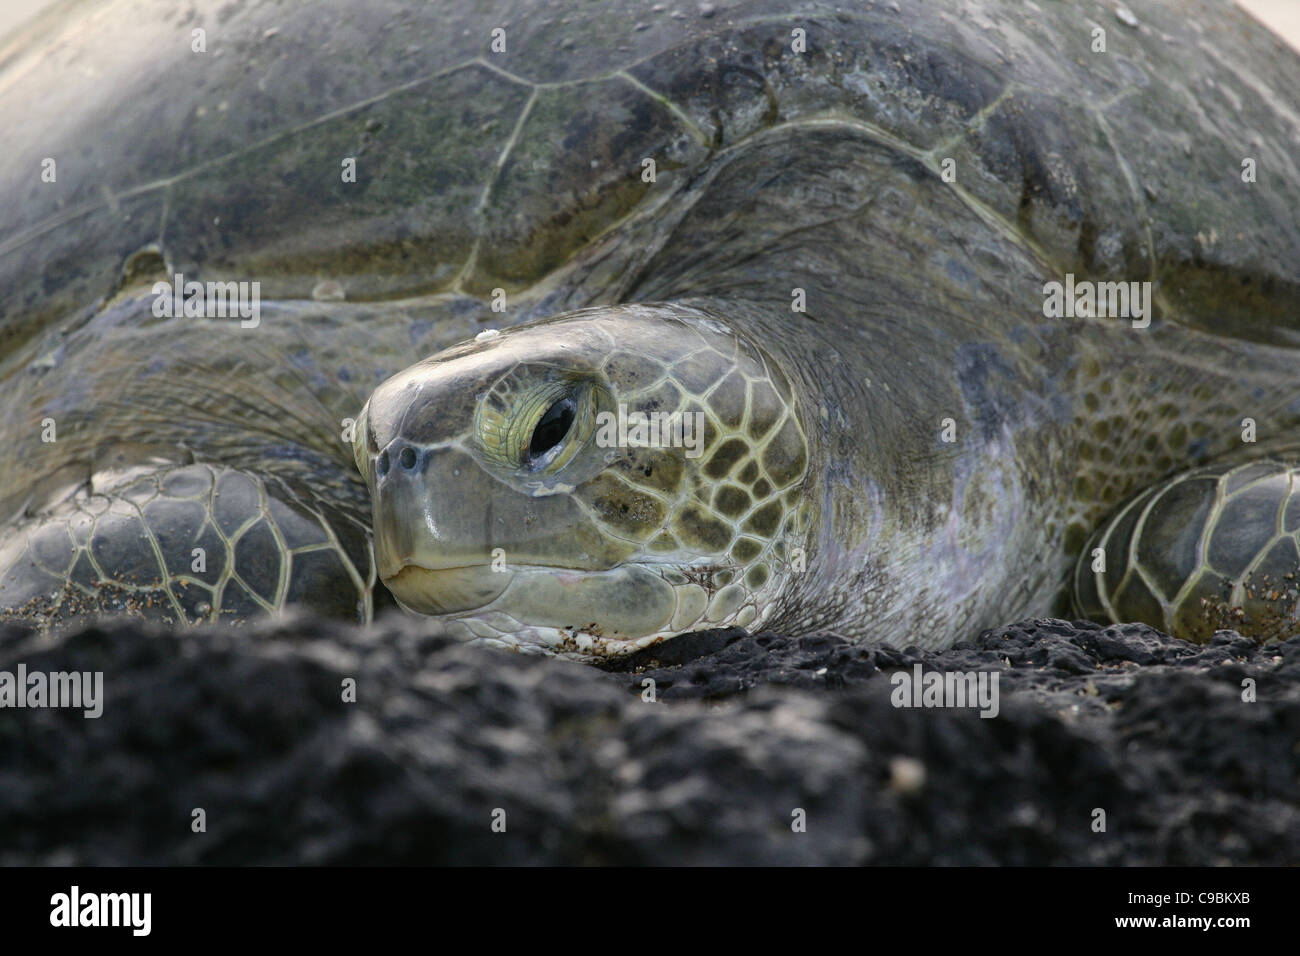 L'Afrique, la Guinée-Bissau, la tortue de mer verte sur la pierre, Close up Banque D'Images